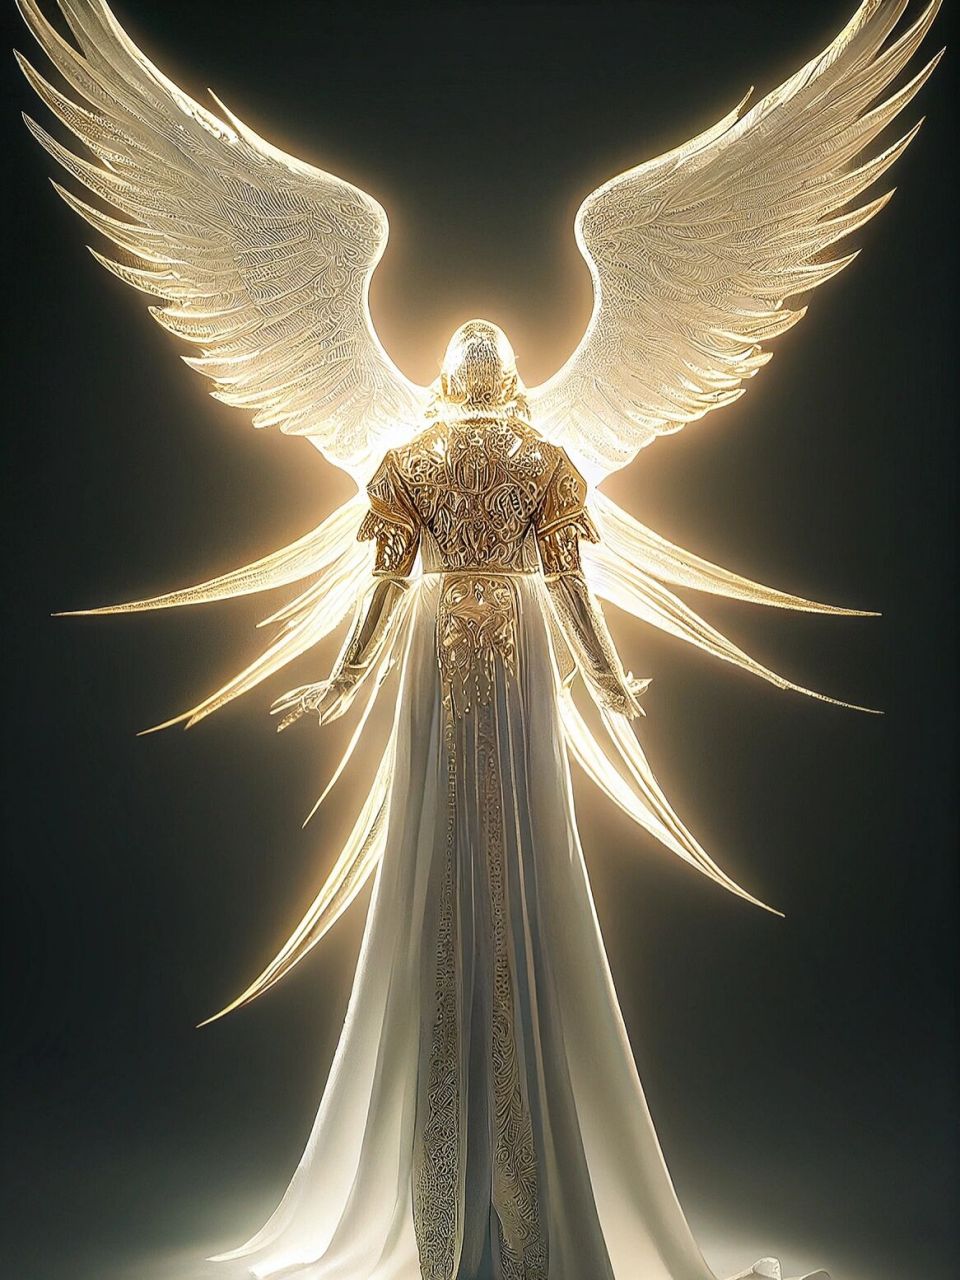 天使长的风采 加百列本为炽天使,作为天使长,在天堂位于重要的守护